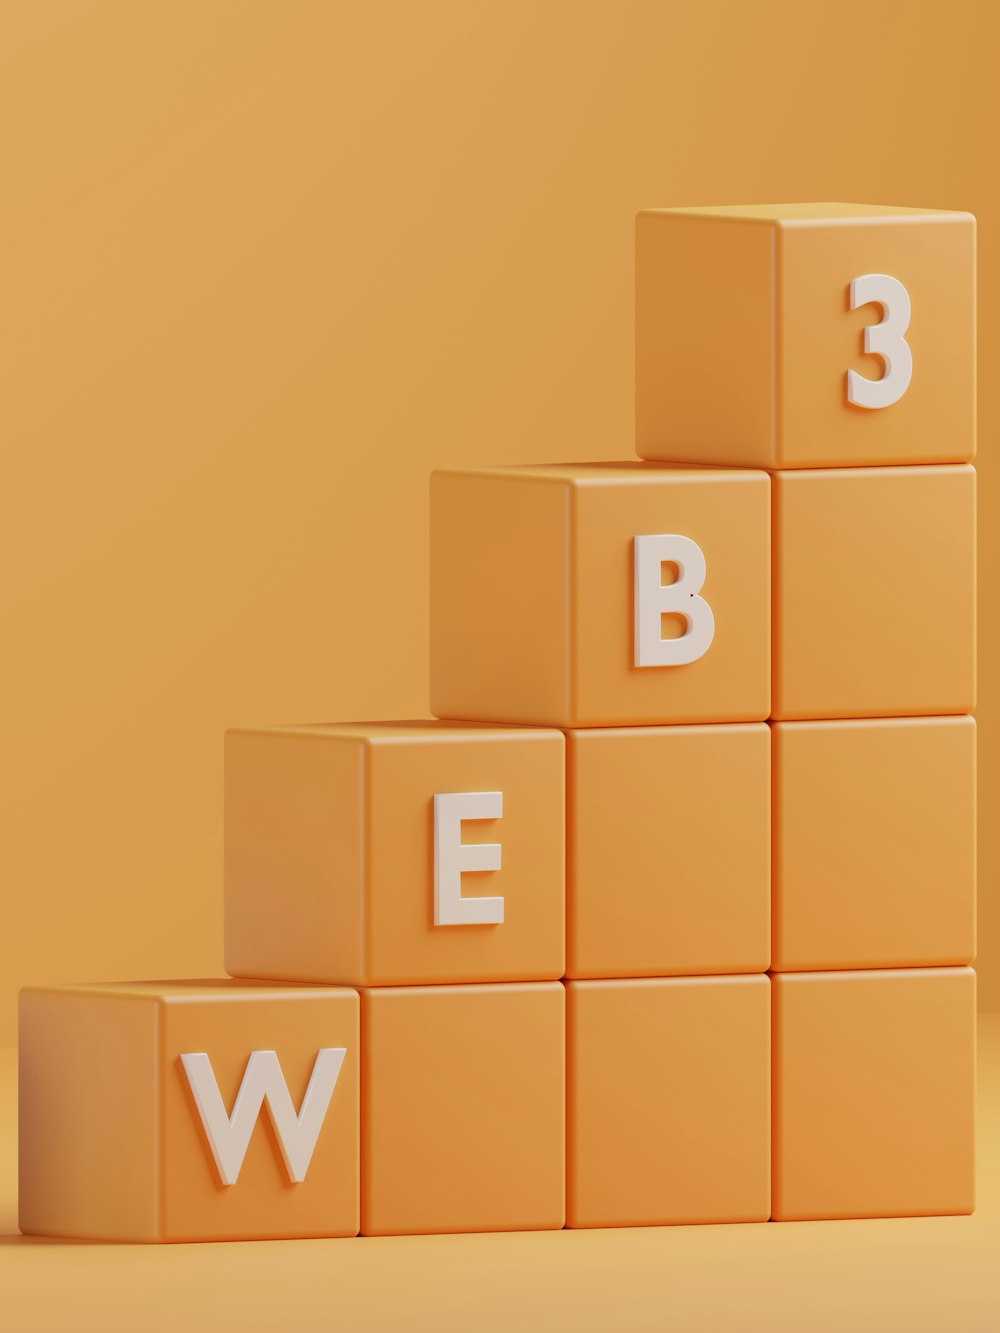 uma renderização 3d de uma pirâmide de blocos com as letras e, b, e